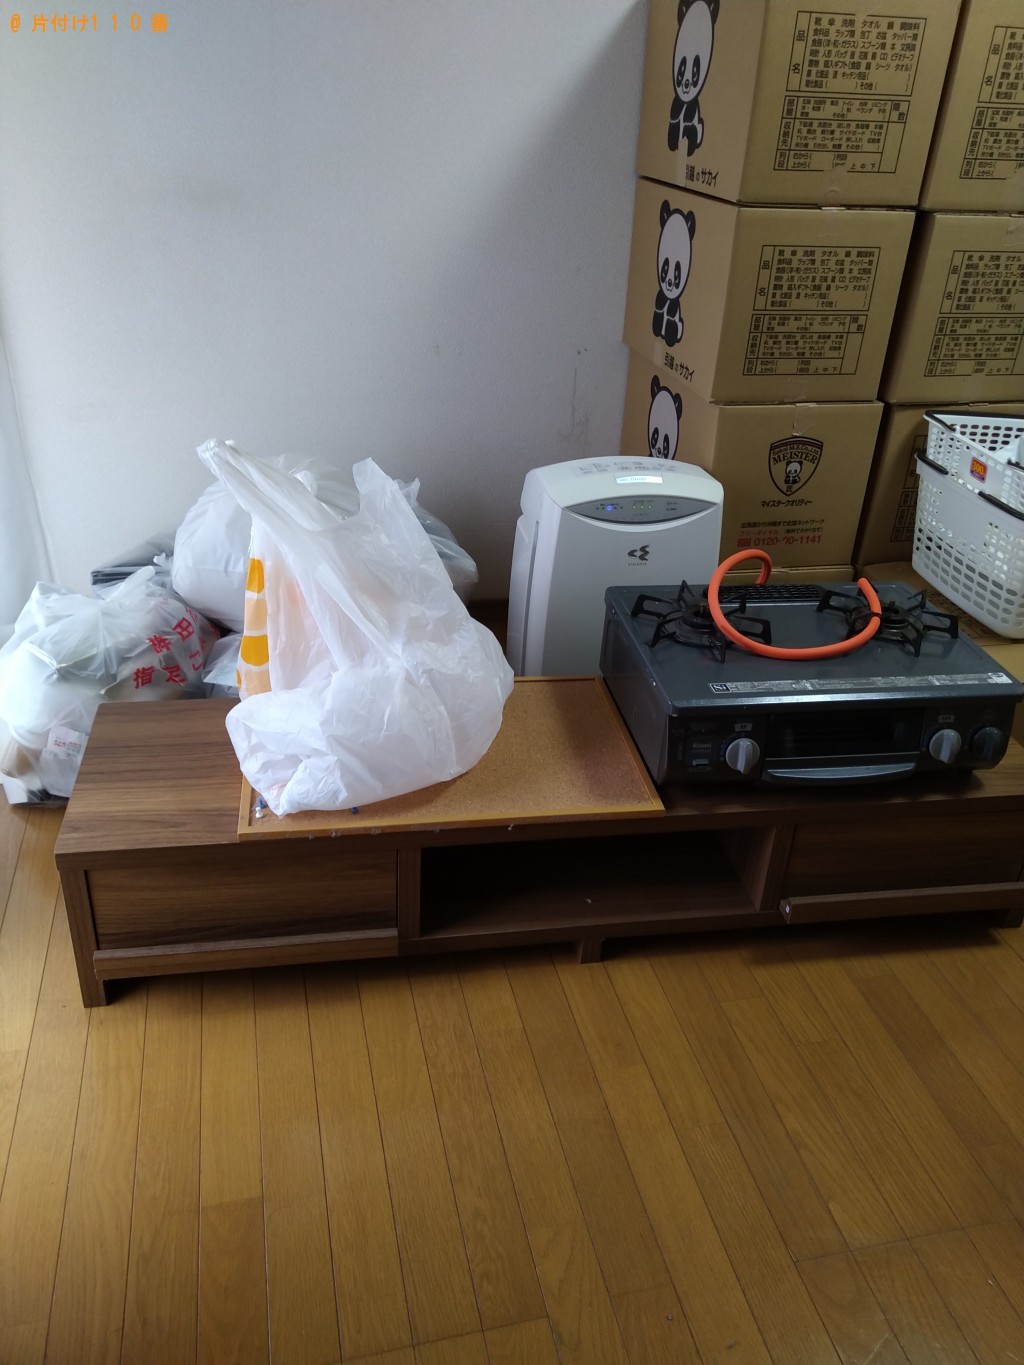 【筑西市】ガスコンロ、シングルベッド、テレビ台の回収・処分ご依頼